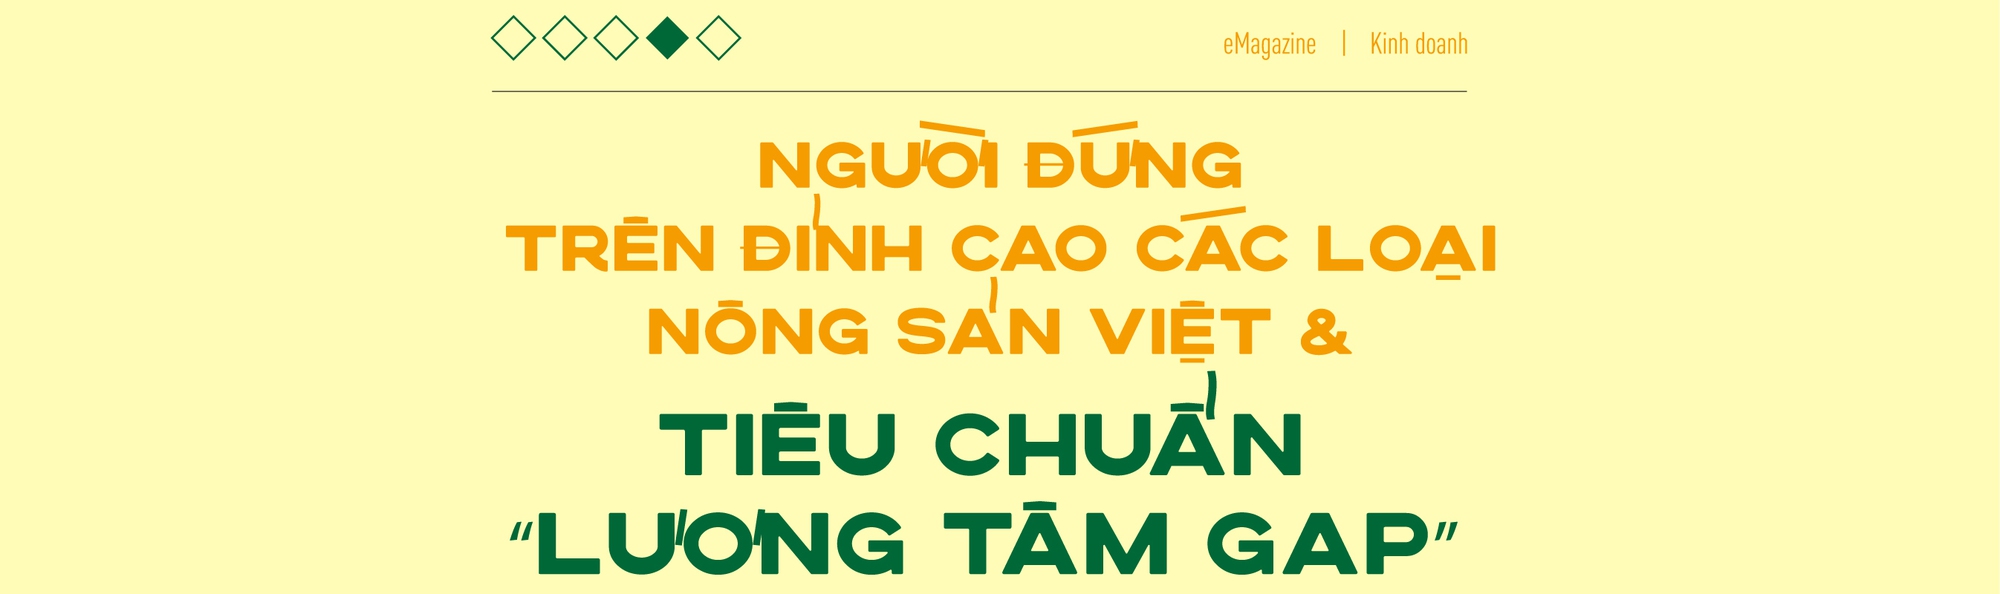 “Vua chuối” Võ Quan Huy: “Đừng đổ lỗi cho Trung Quốc” - Ảnh 8.